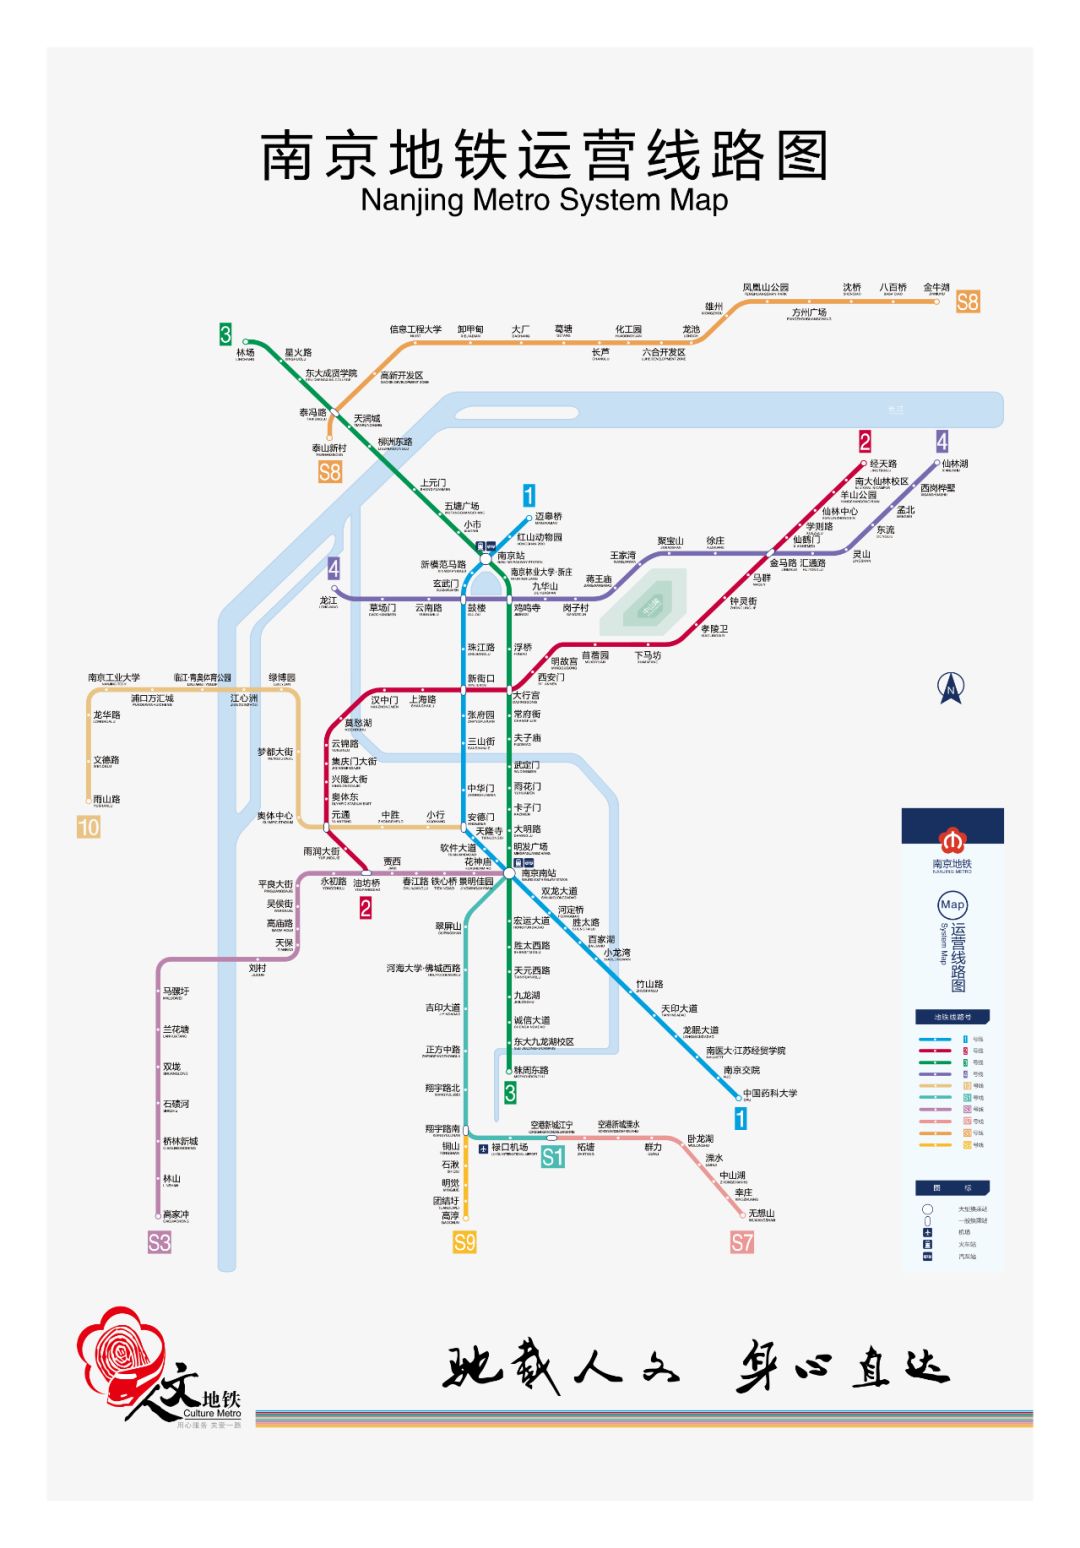 改变生活 幸福伴随你我 2019 地铁侠为大家奉上 最新版南京地铁线路图